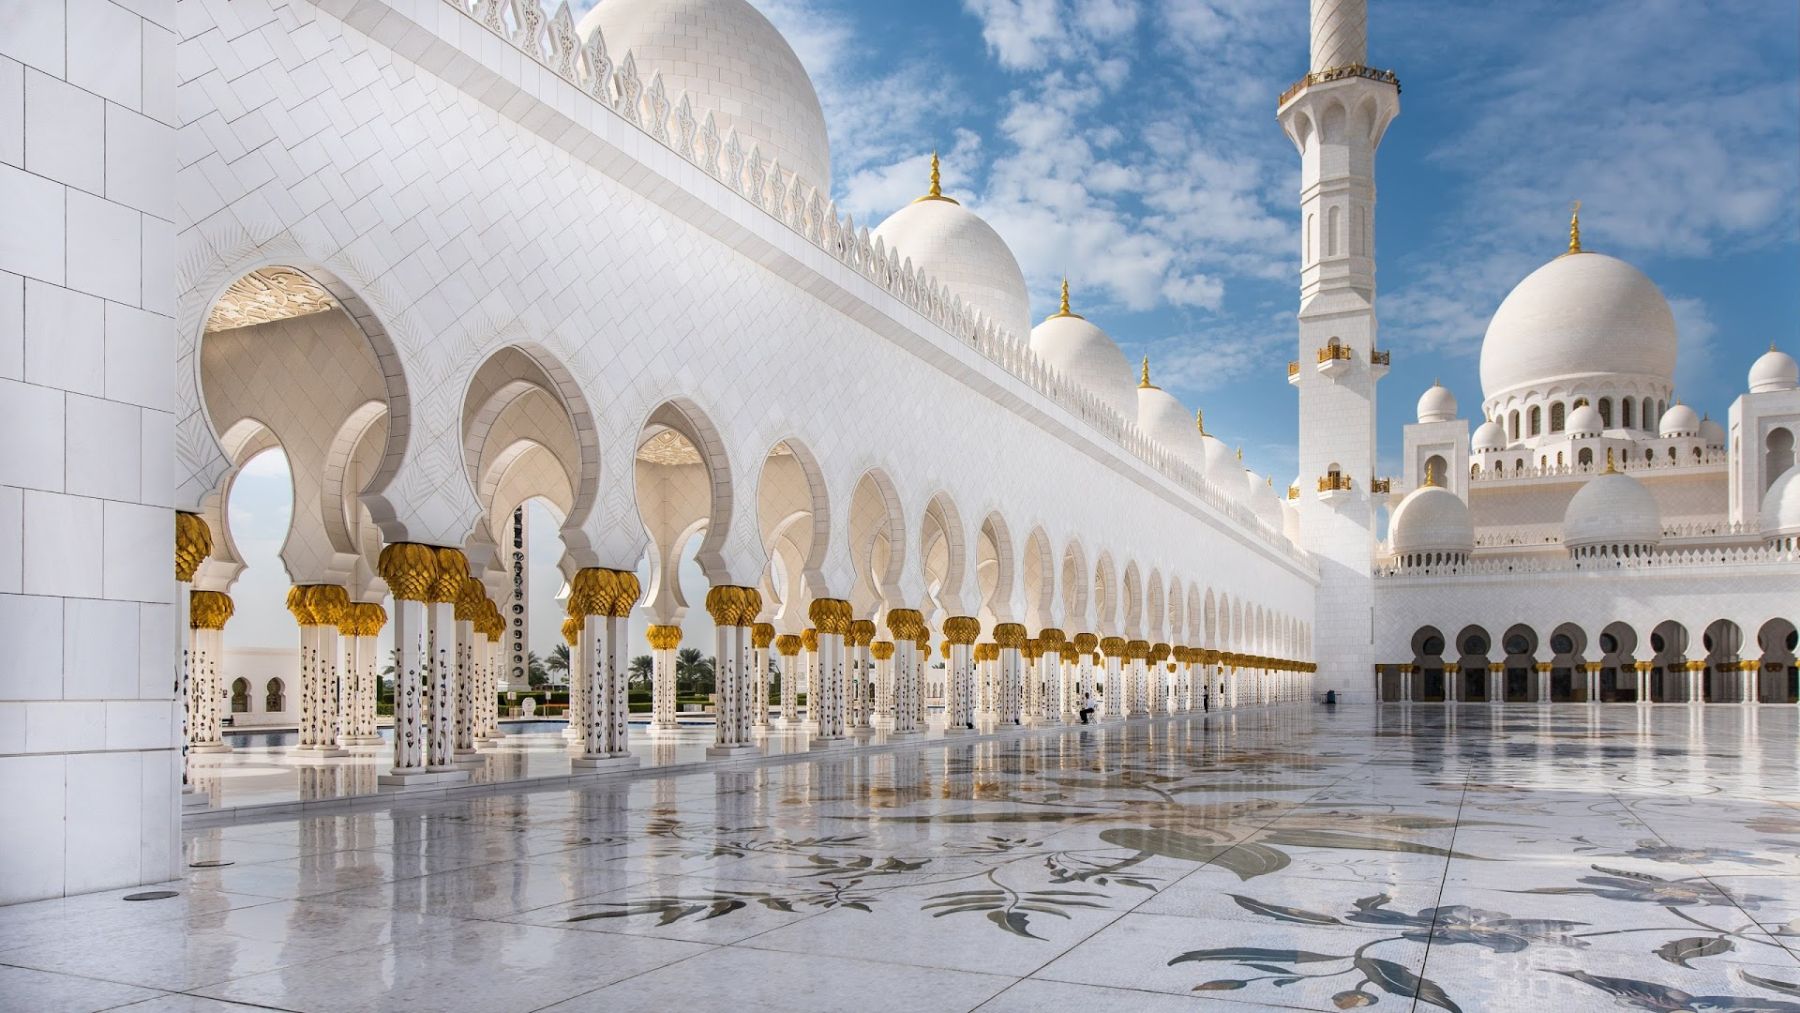 نورپردازی مسجد شیخ زاید بن سلطان در دبی! | آرل